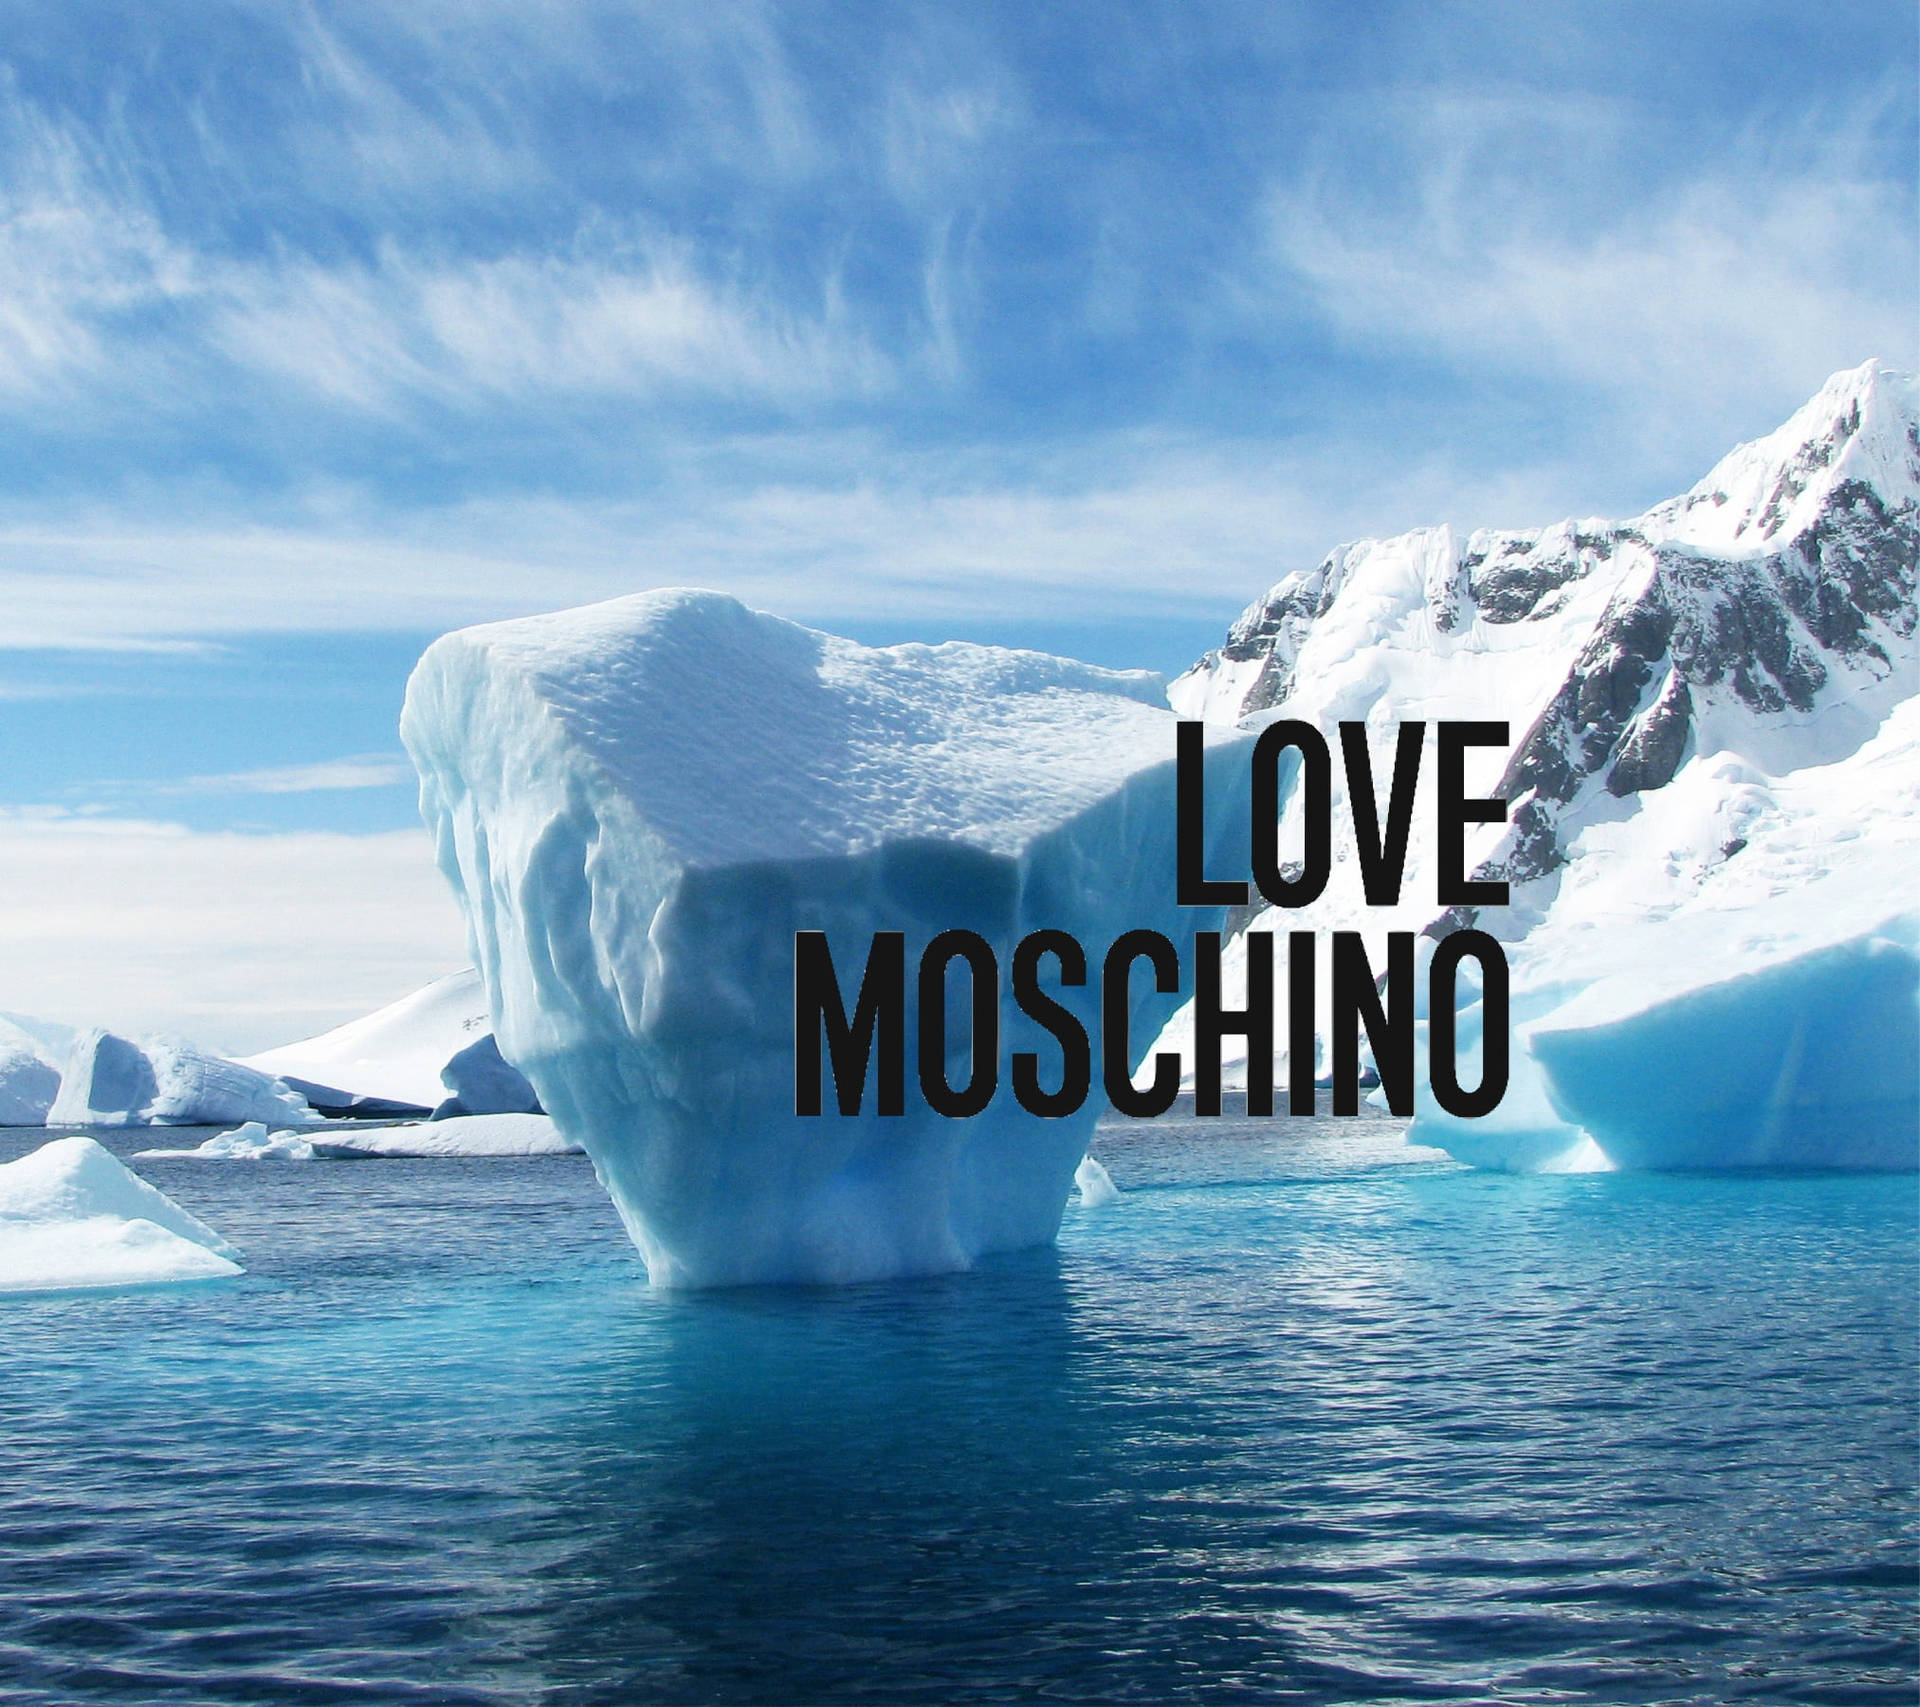 Love Moschino Iceberg